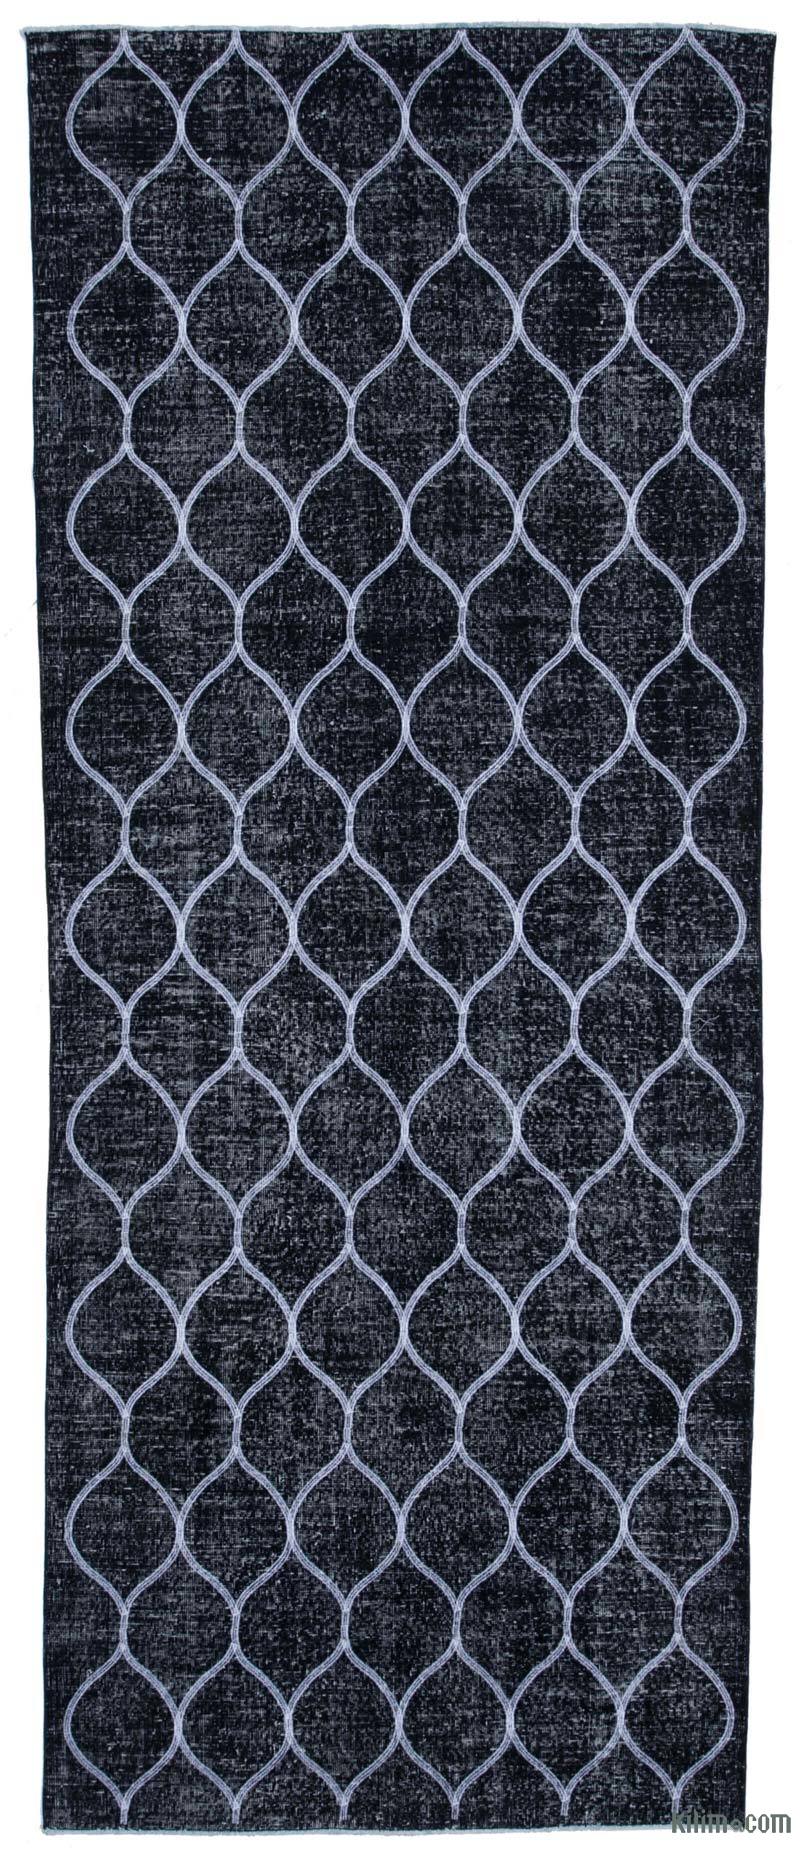 Siyah İşlemeli ve Boyalı El Dokuma Vintage Halı - 141 cm x 358 cm - K0038782